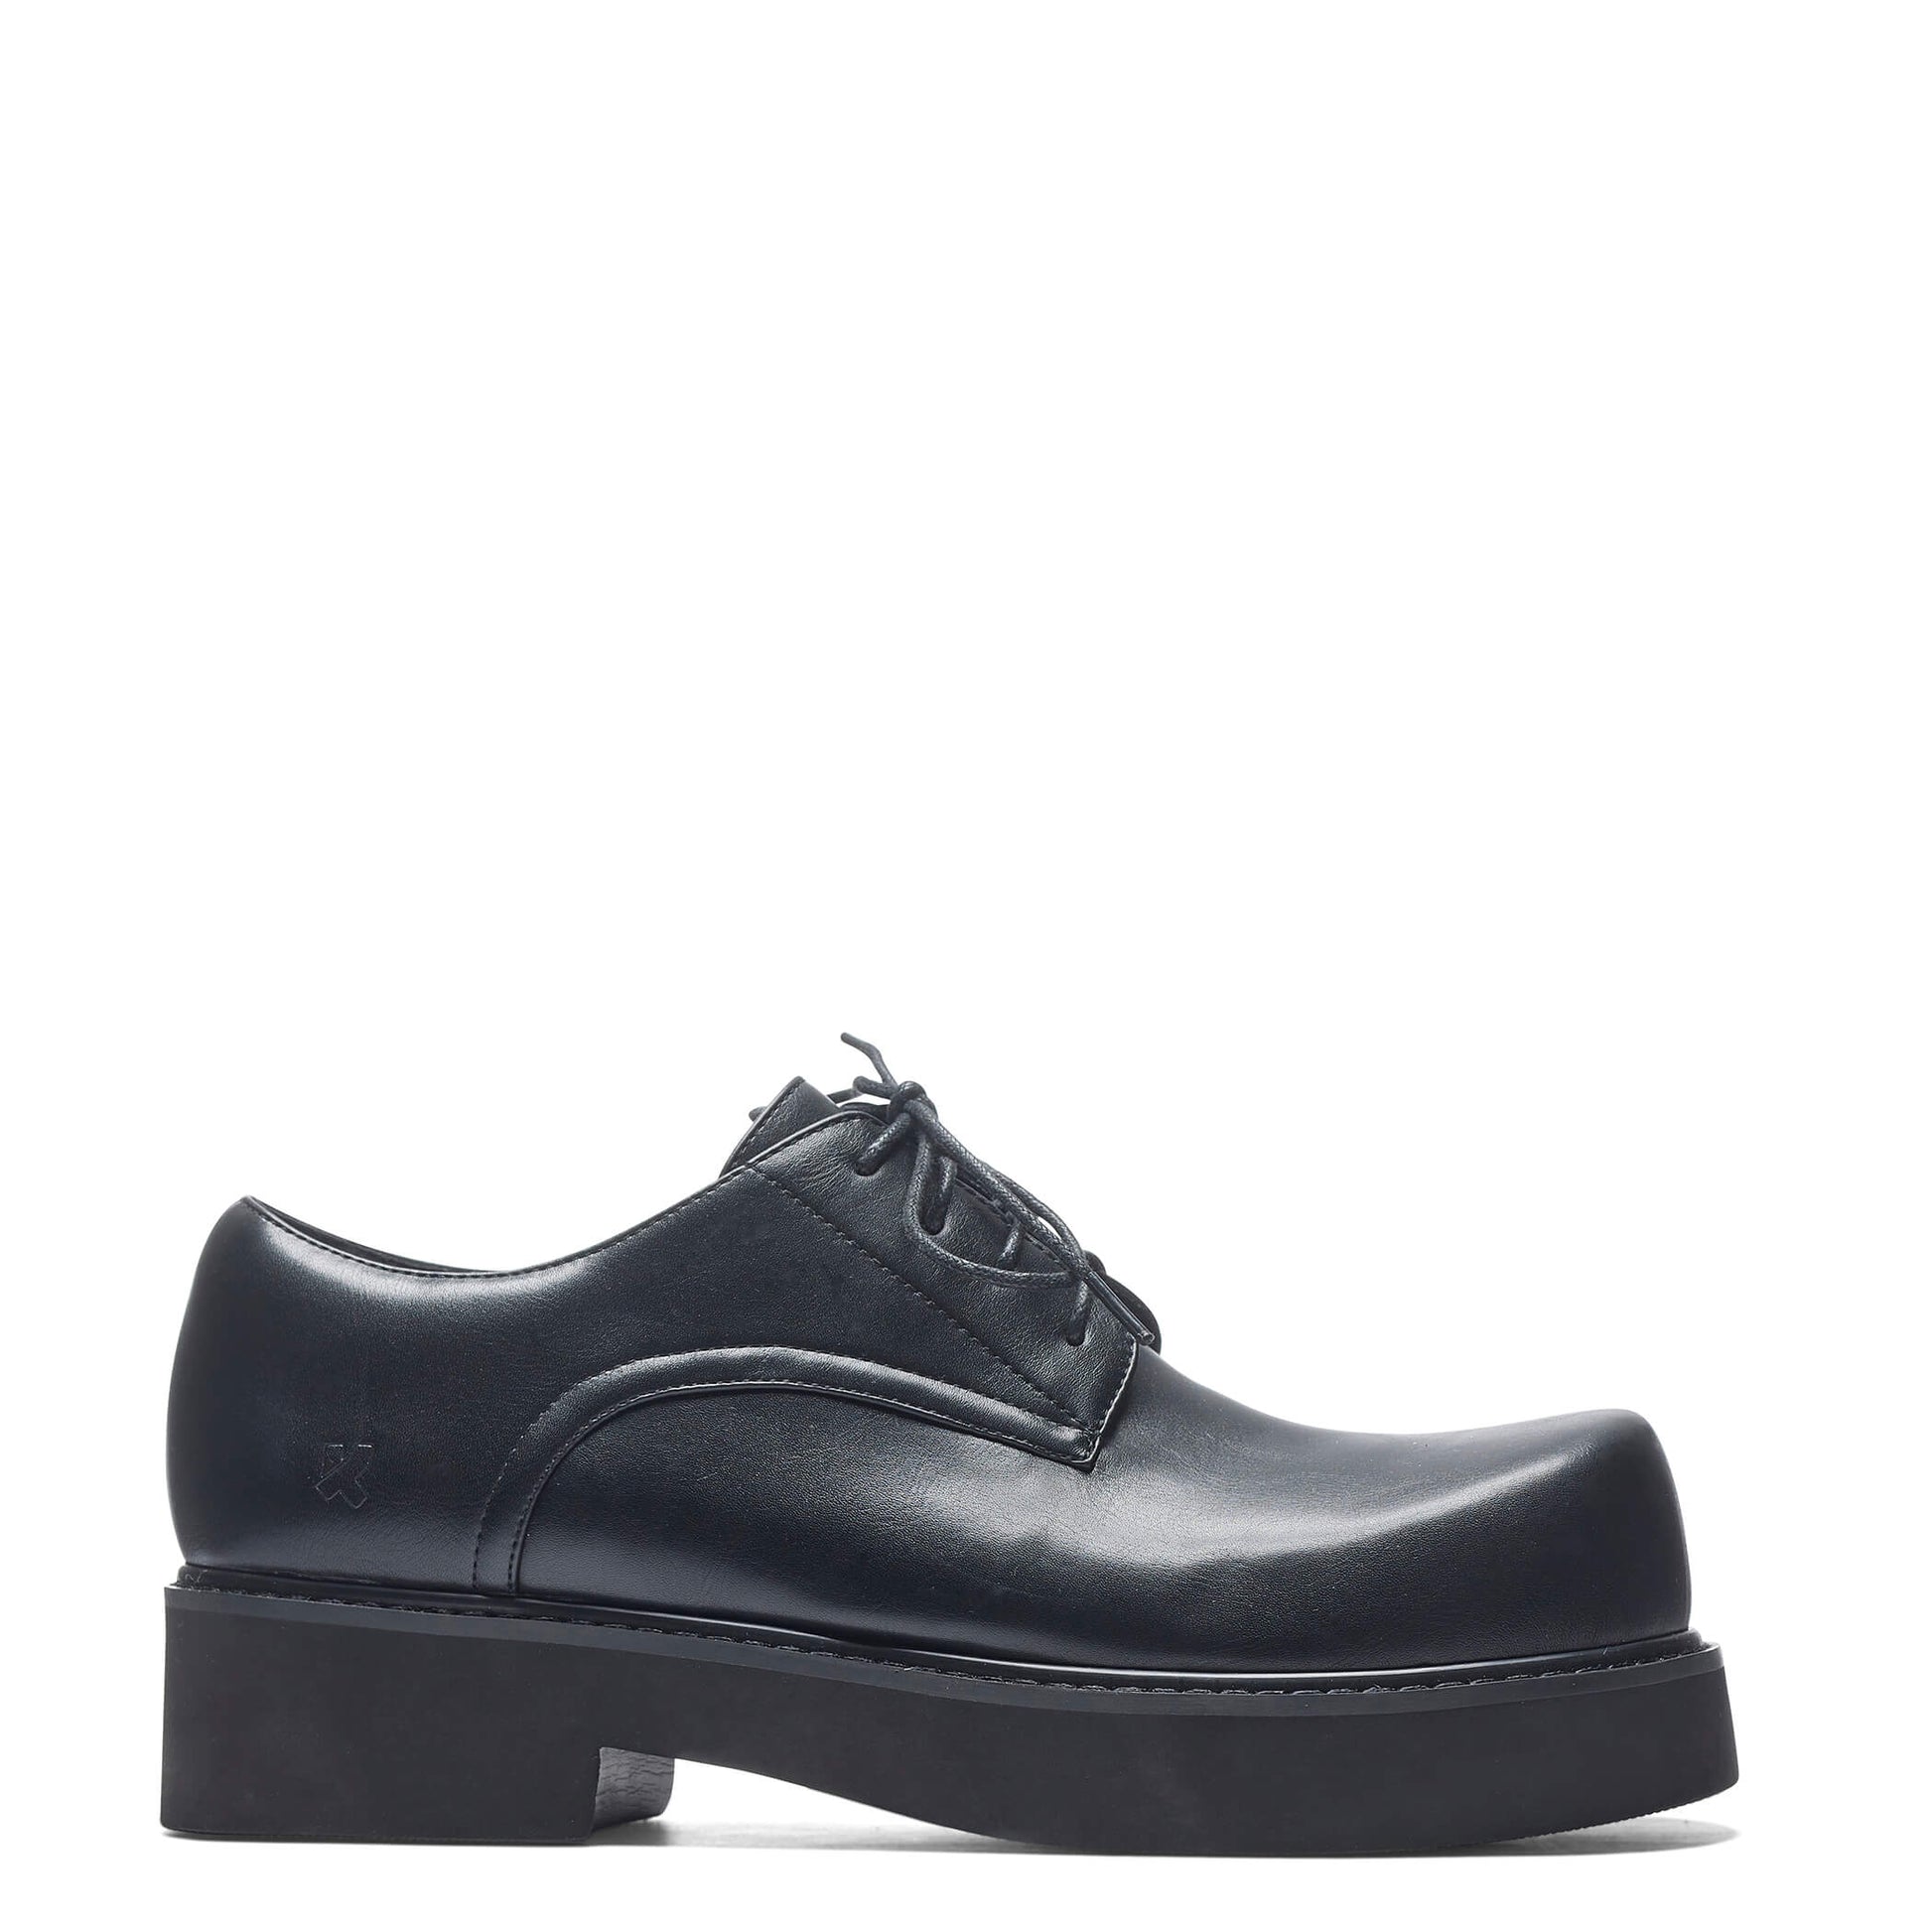 400% Oversized Men's Derby Shoes - Black - Koi Footwear - Side View